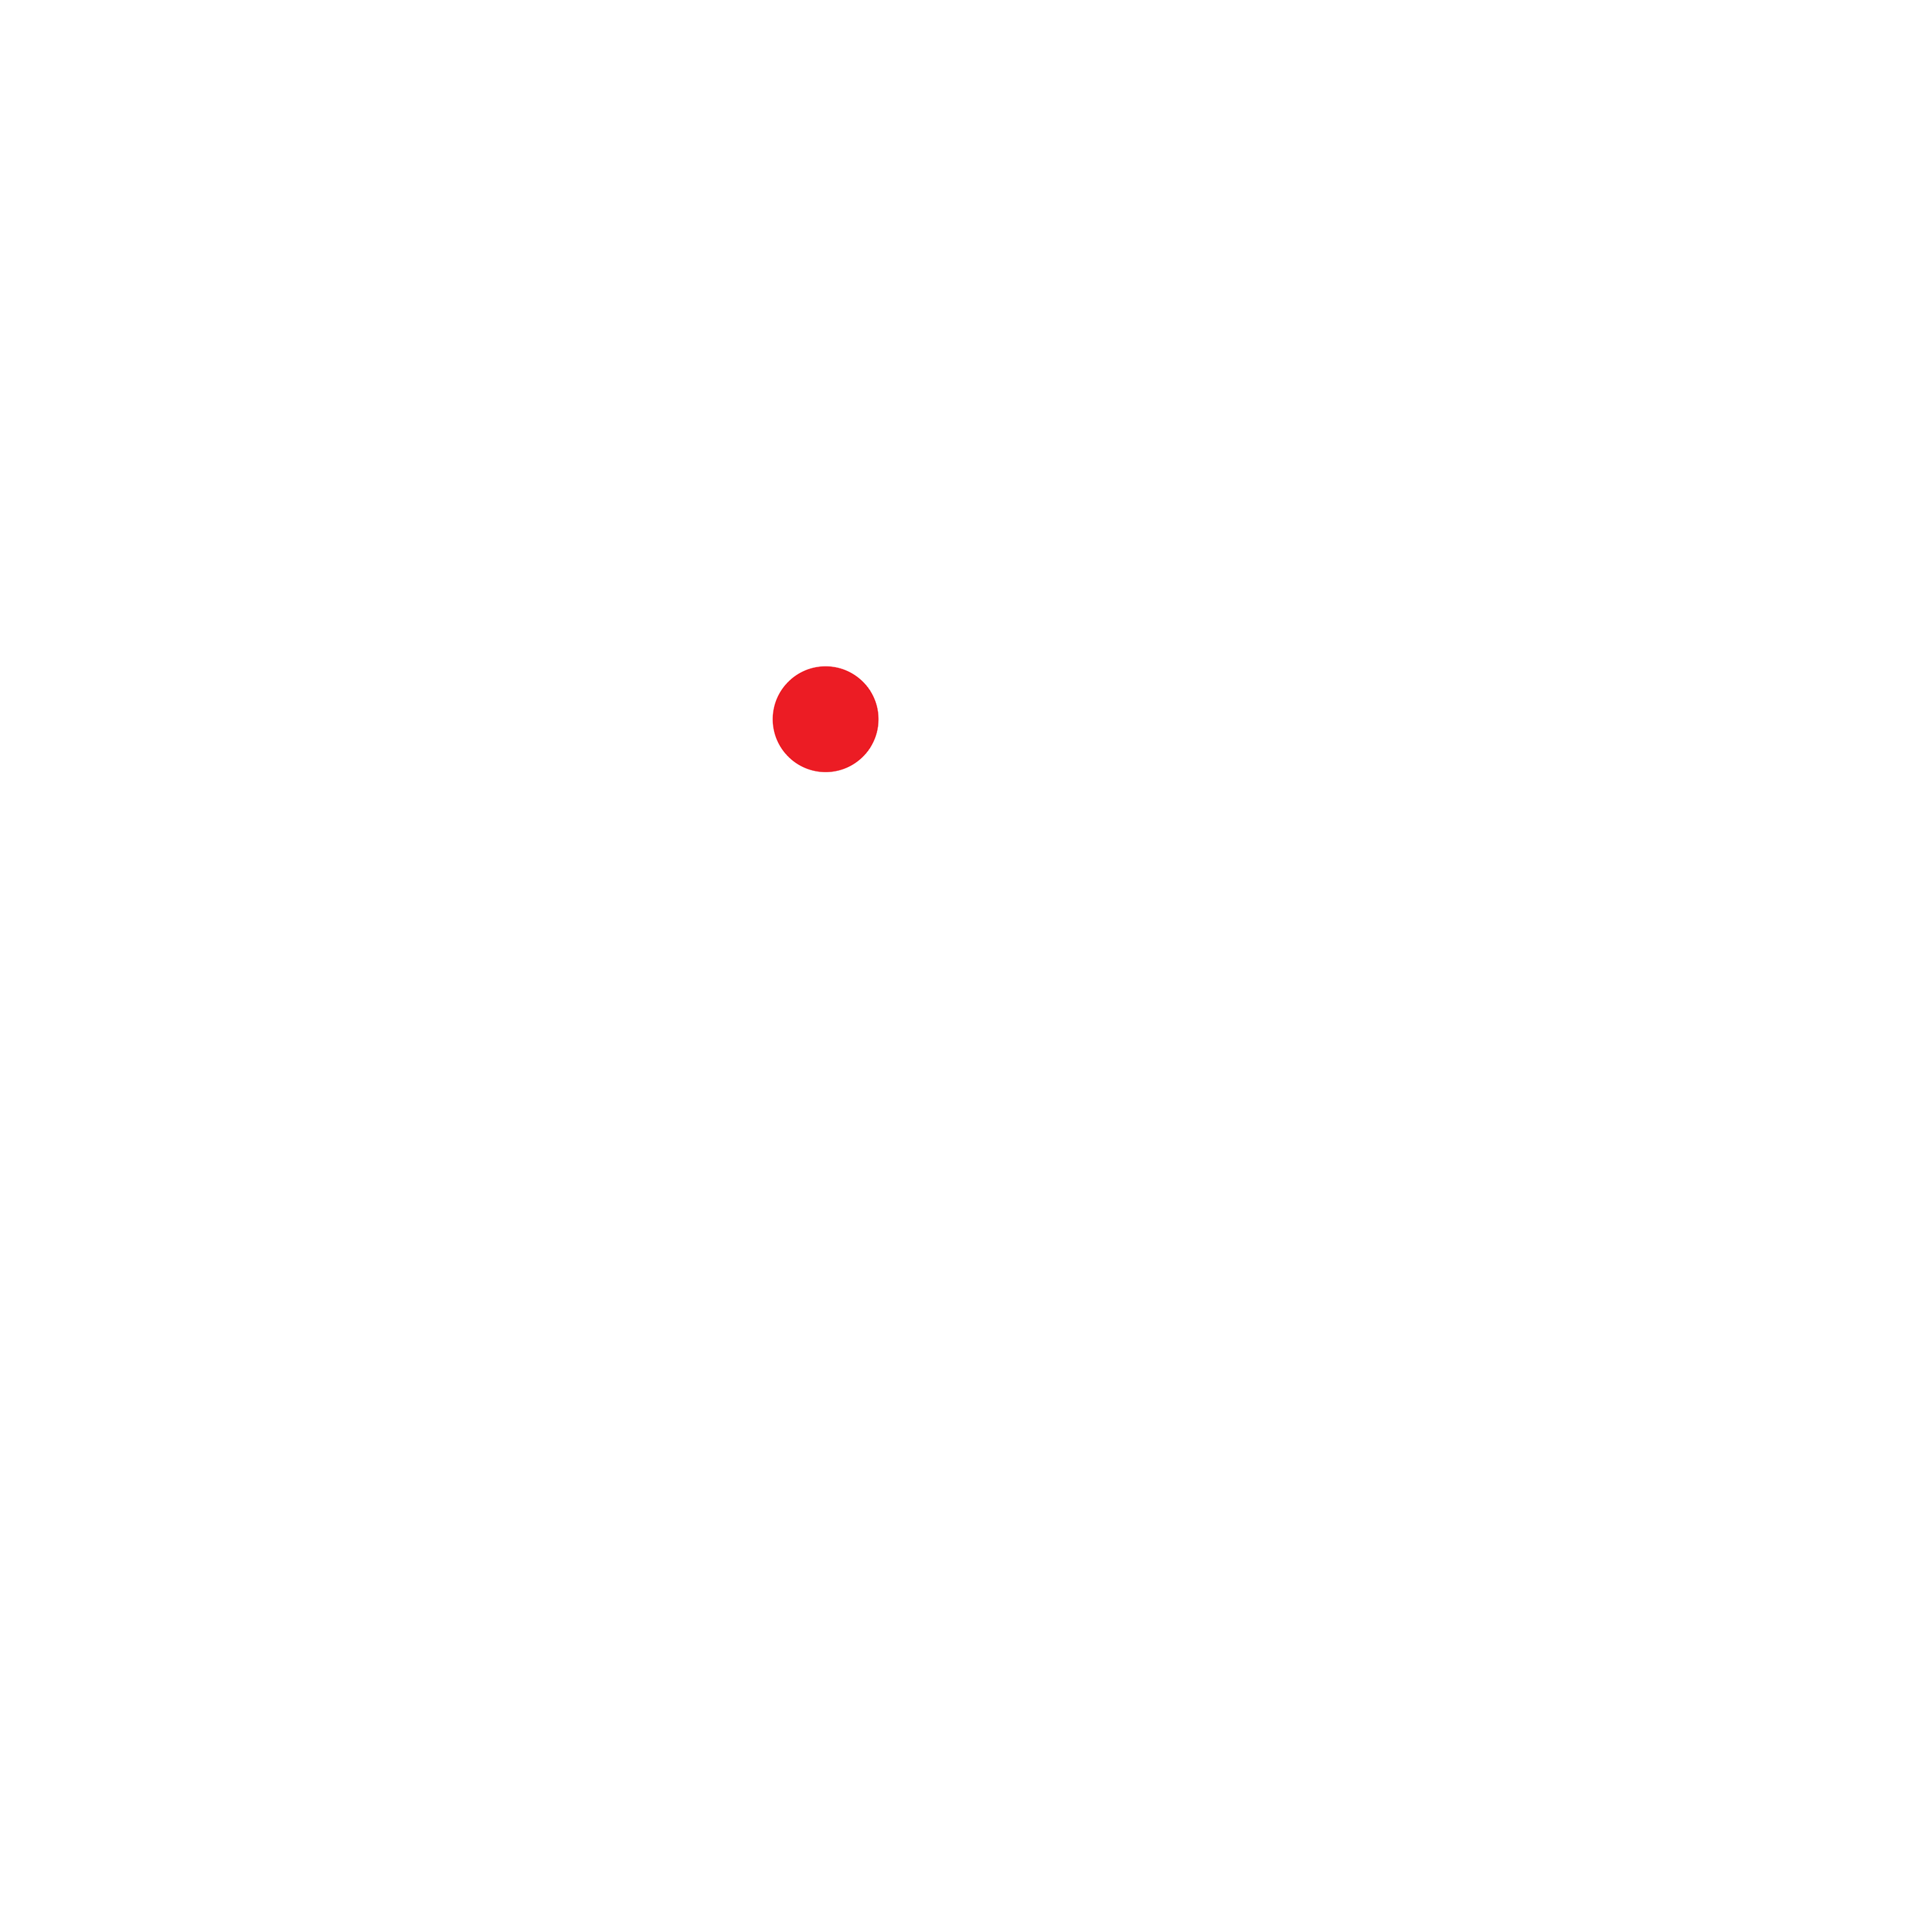 NDTV India Logo Transparent Photo